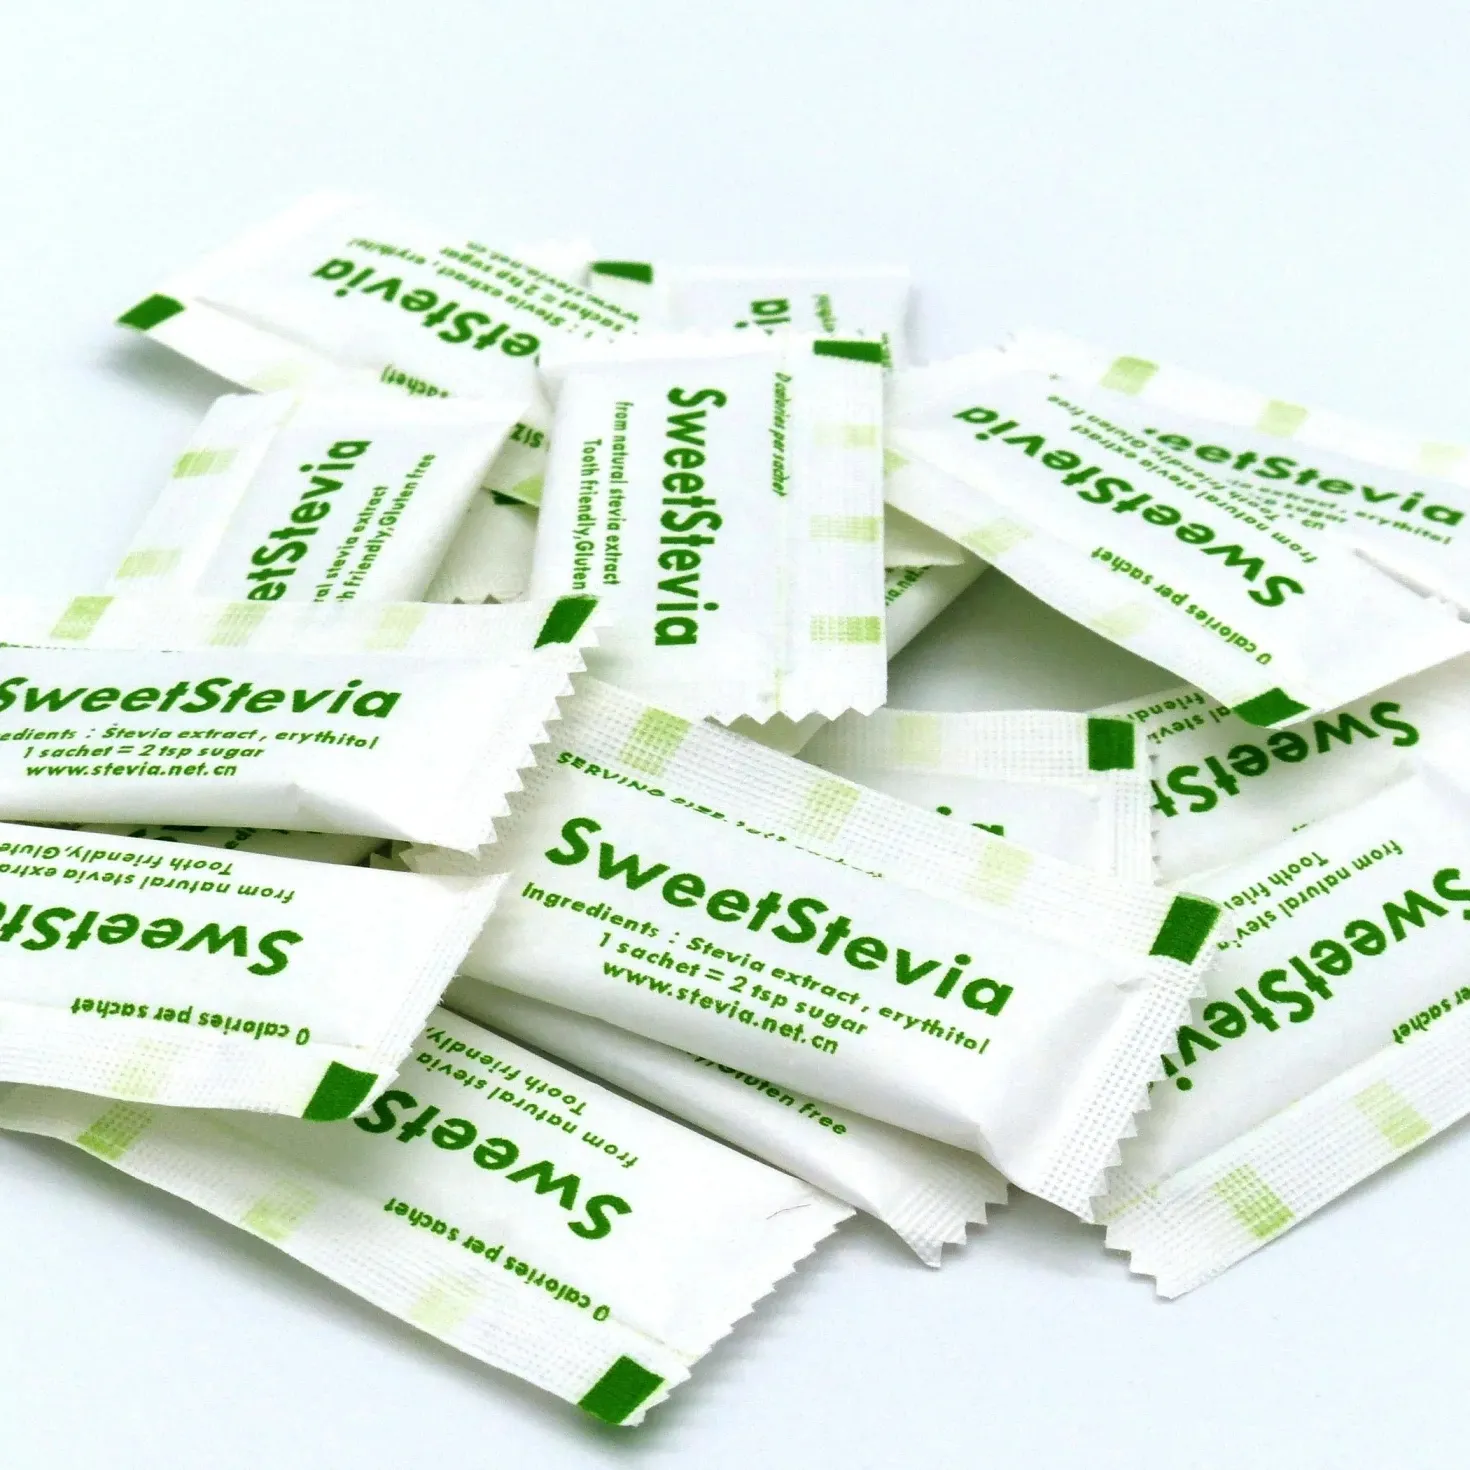 Putih kristal Stevia 1g Sachet dengan rasa Keren & segar makanan bersertifikat Halal Tabletop Steviol Glycosides layanan OEM